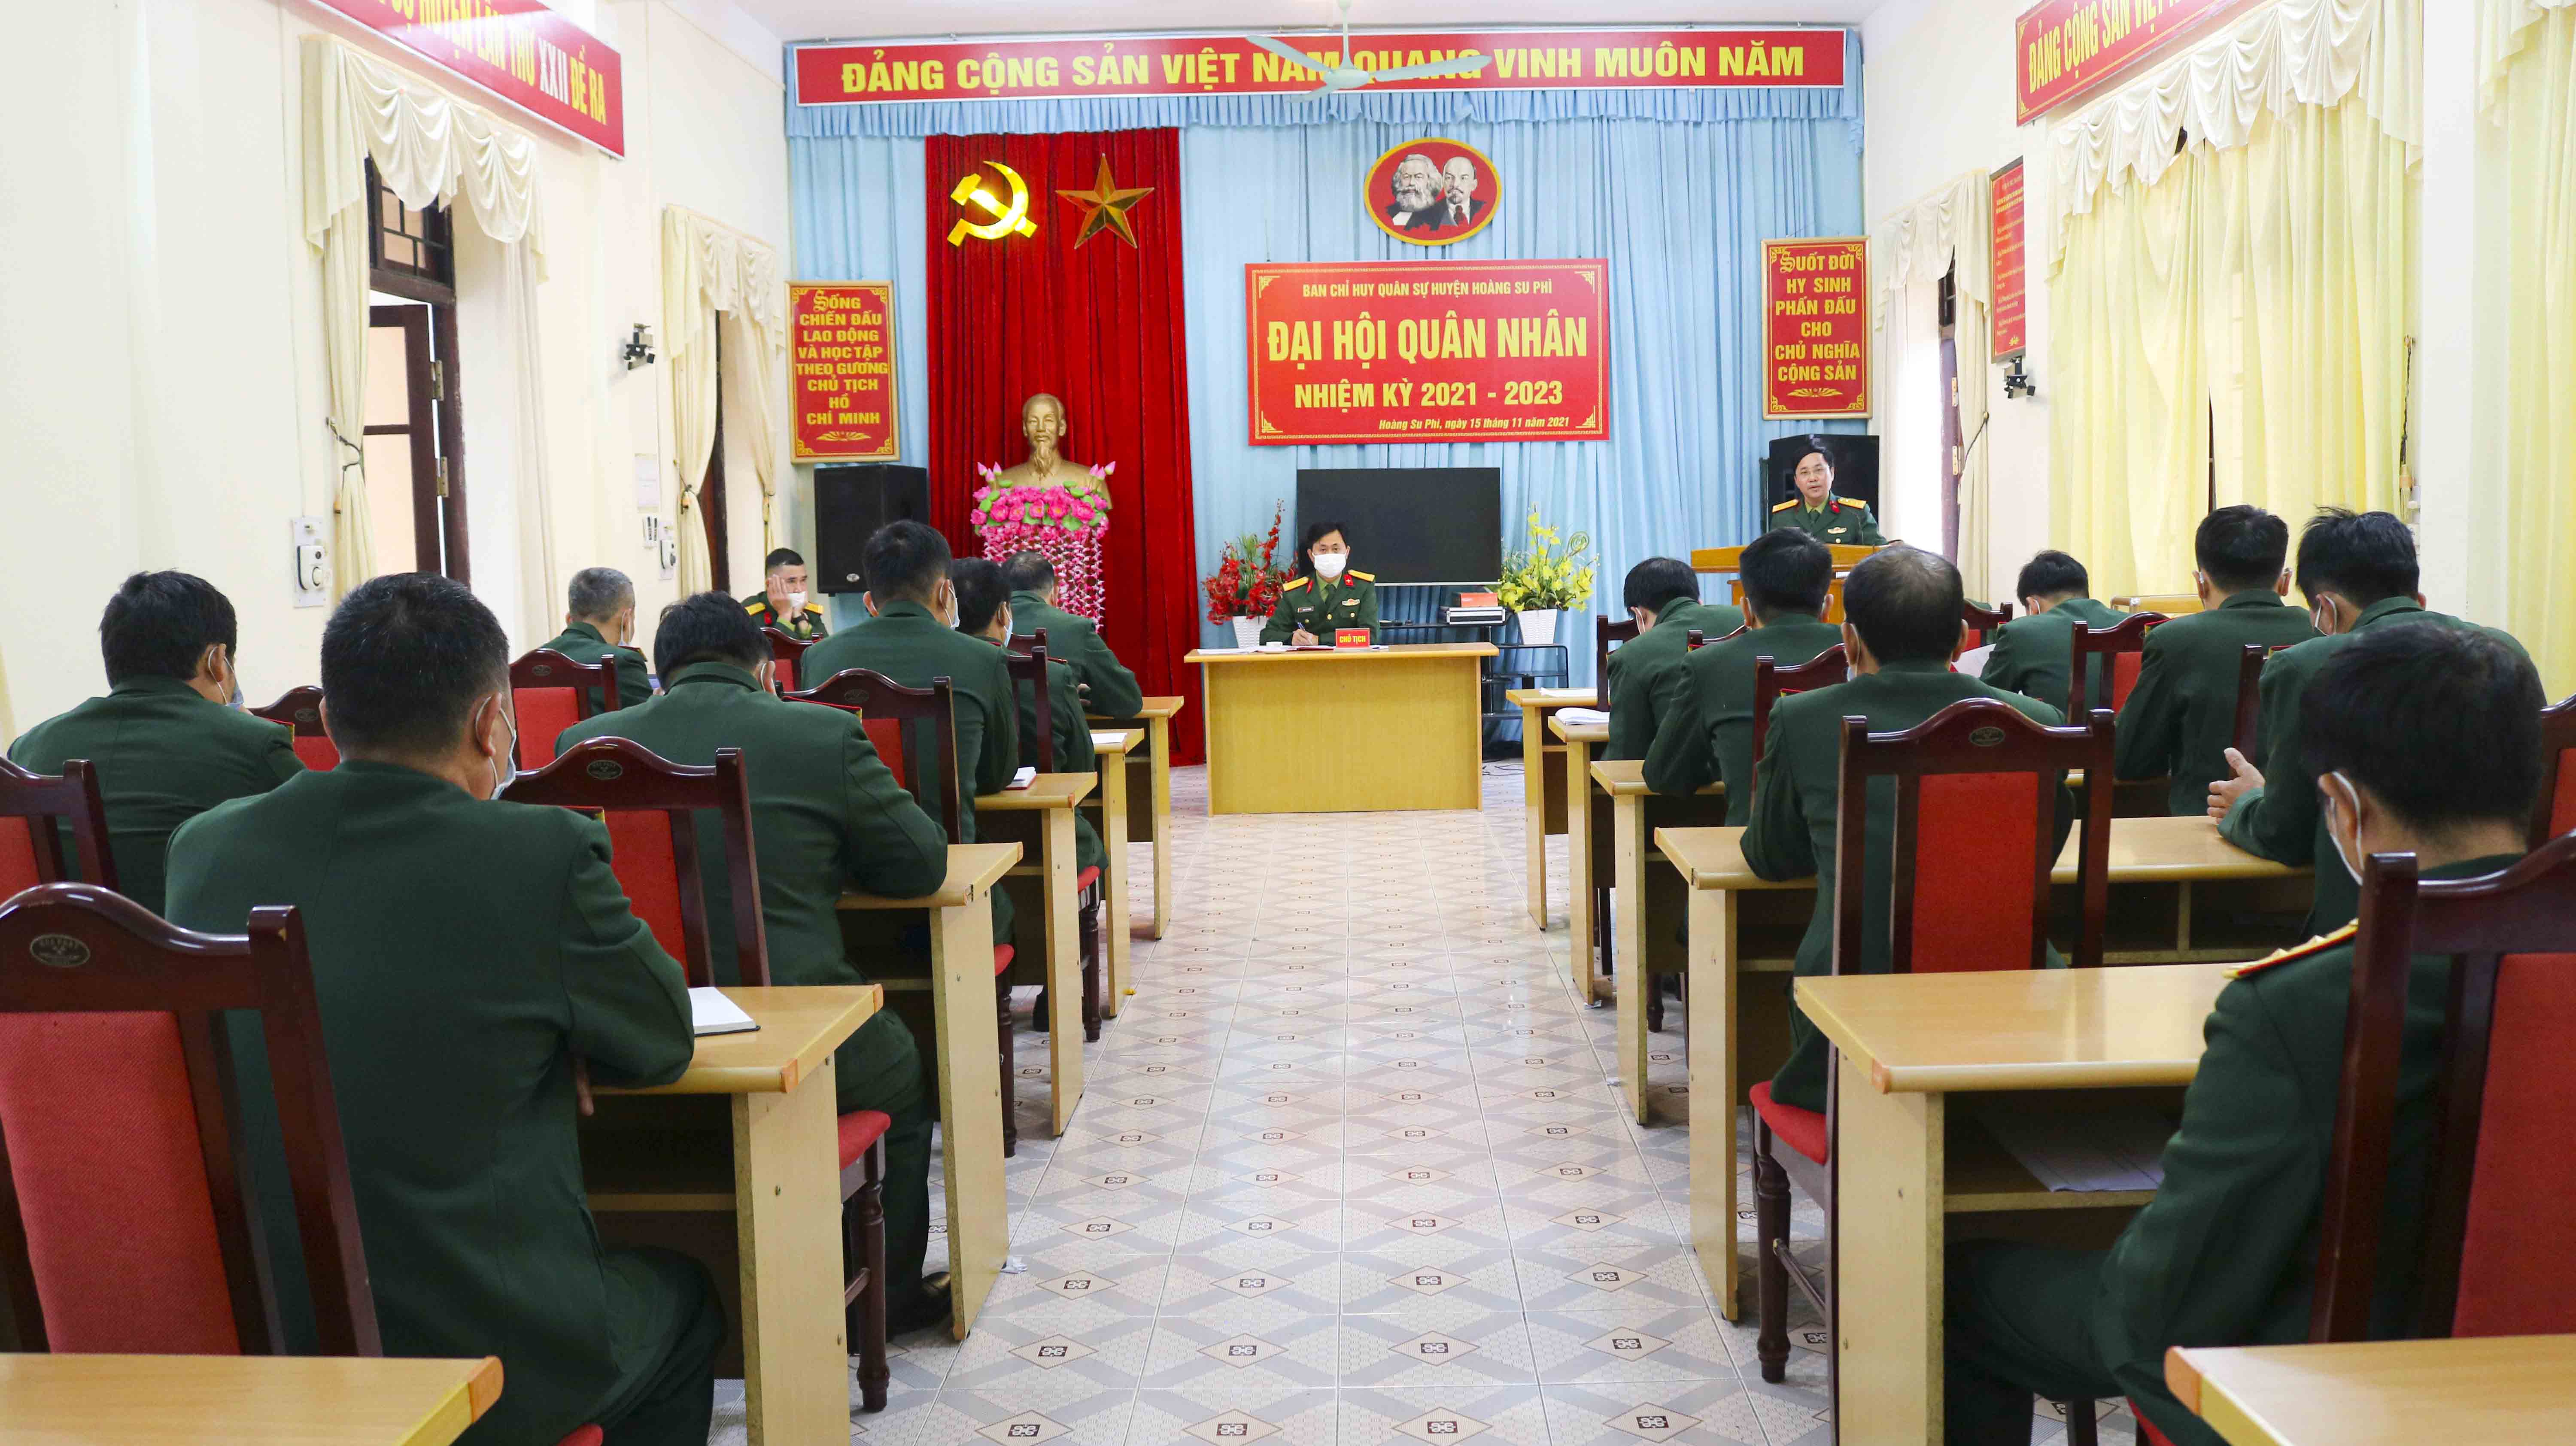 Ban chỉ huy Quân sự huyện Hoàng Su Phì tổ chức Đại hội quân nhân nhiệm kỳ 2021 – 2023